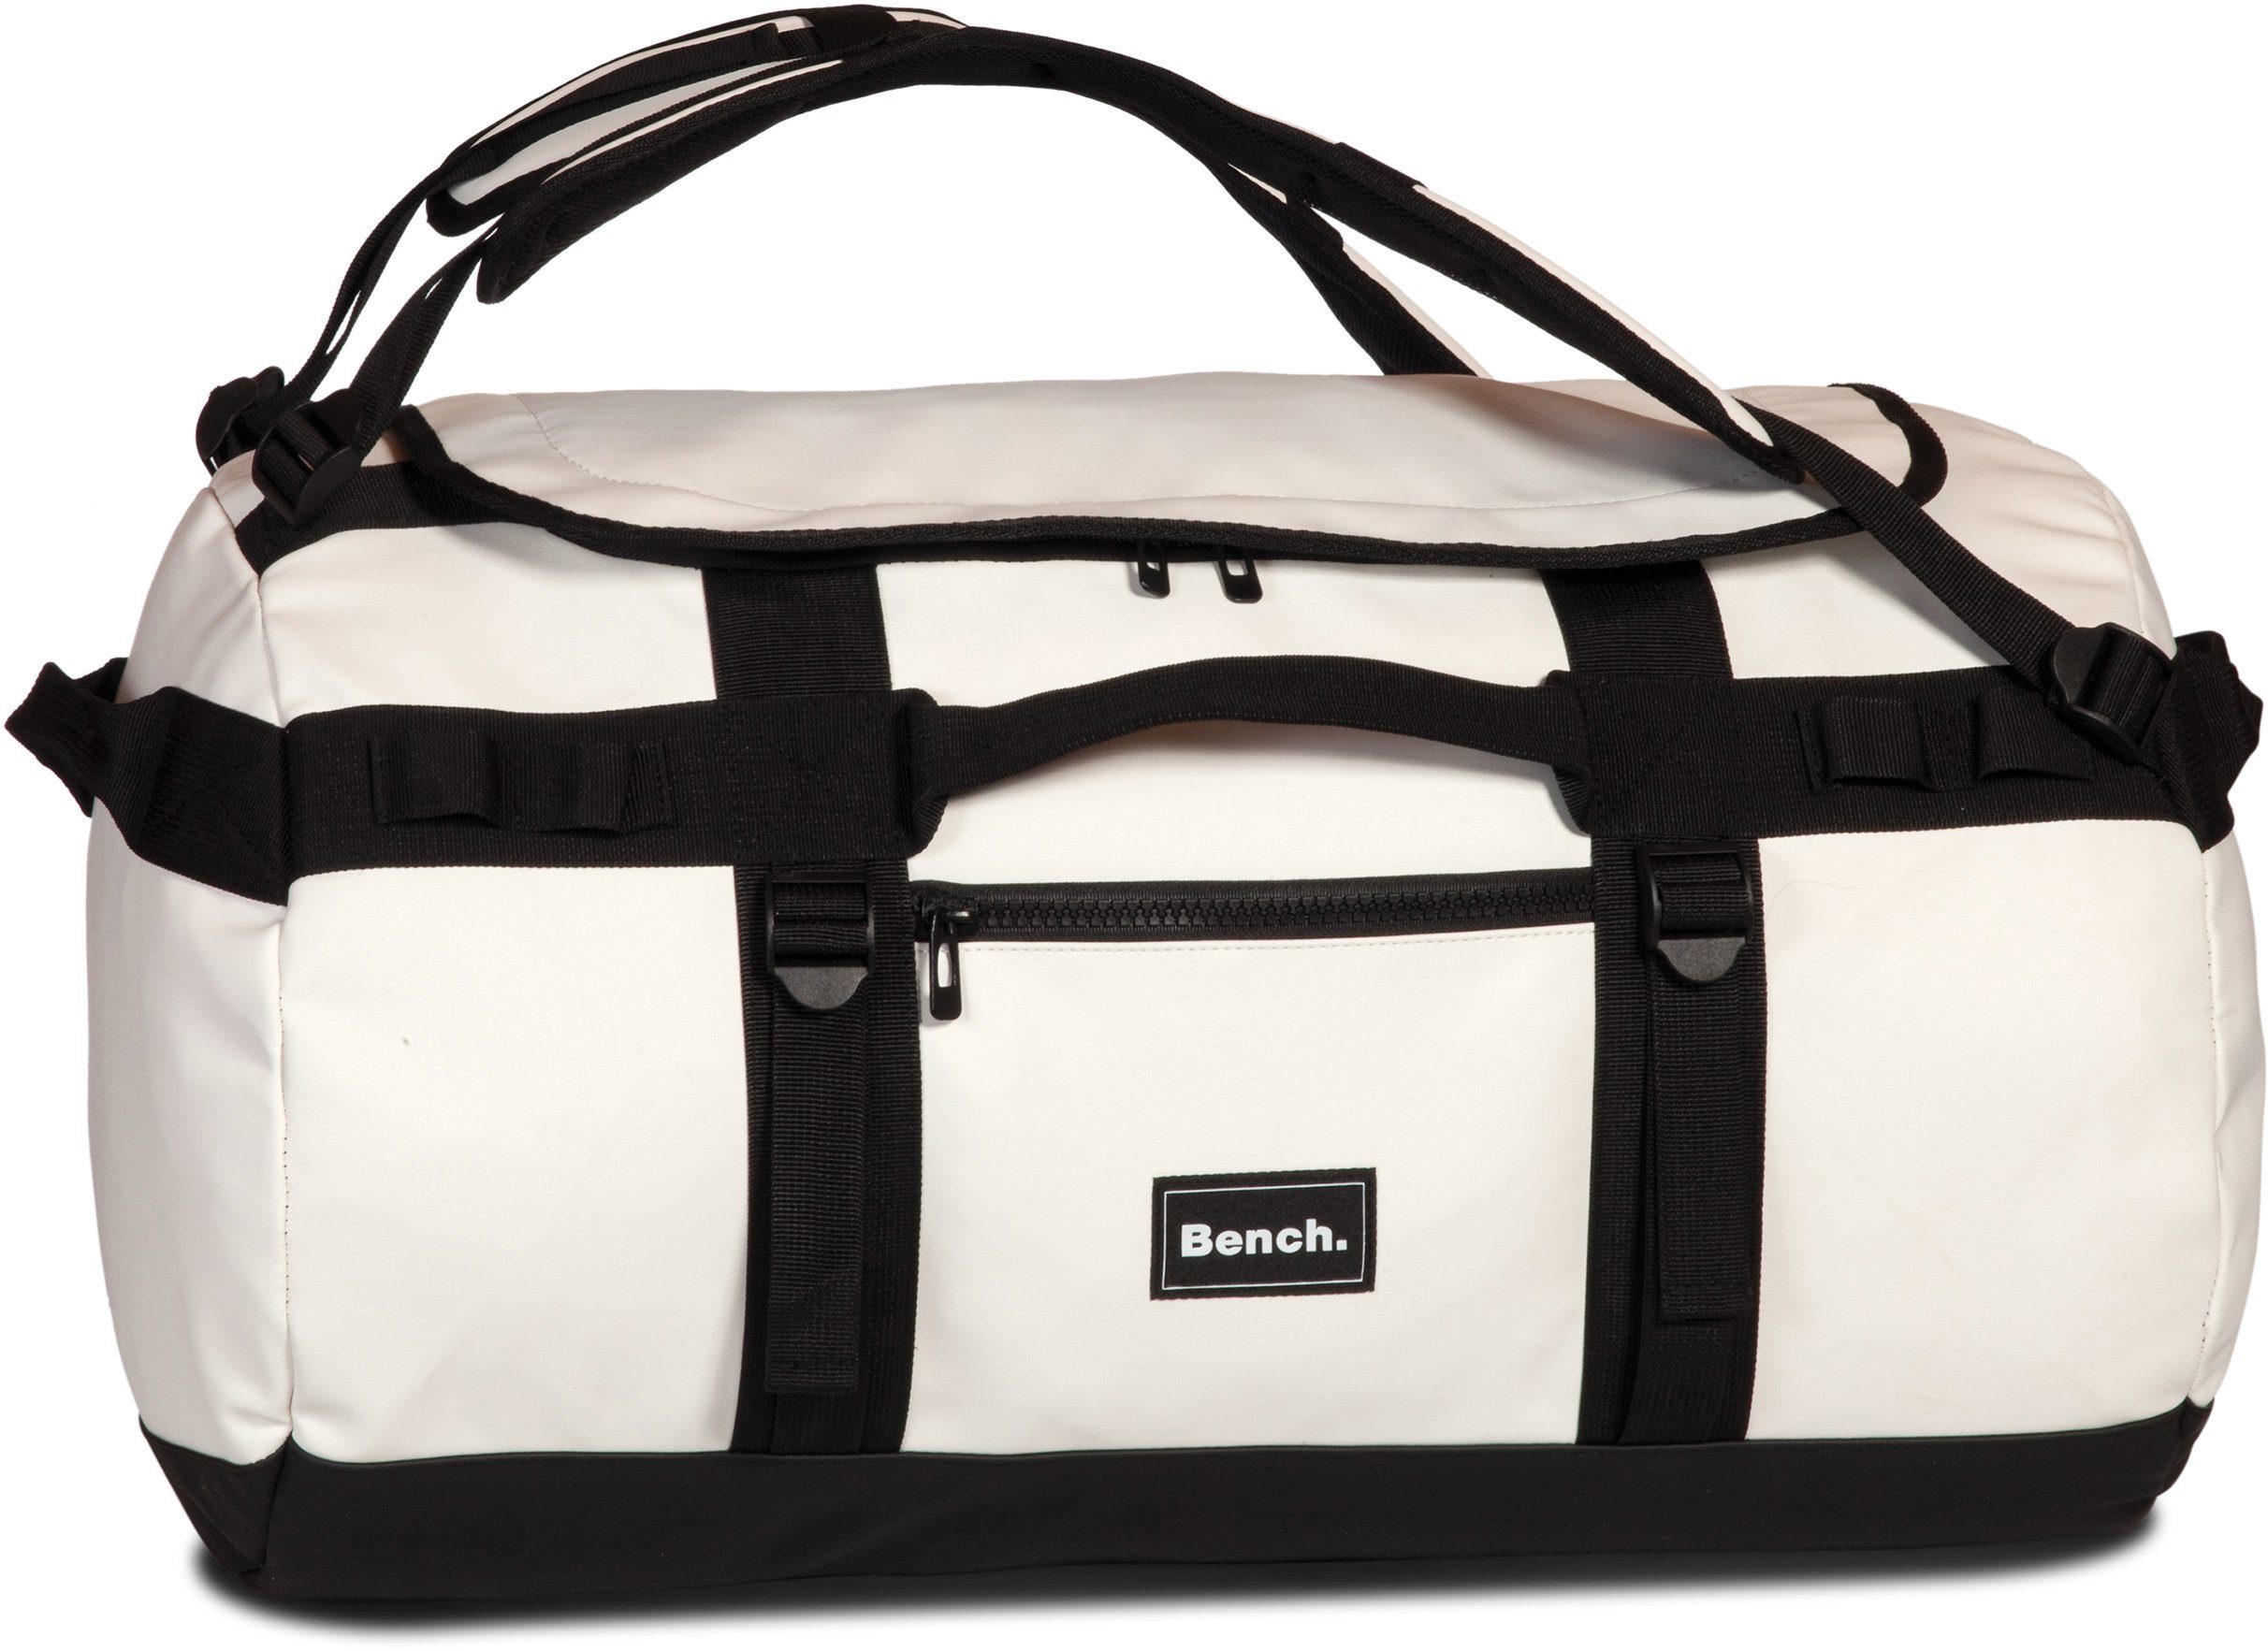 Bench großer Rucksack Sporttasche Fitnesstasche Weekender Reisetasche Tasche Bag 